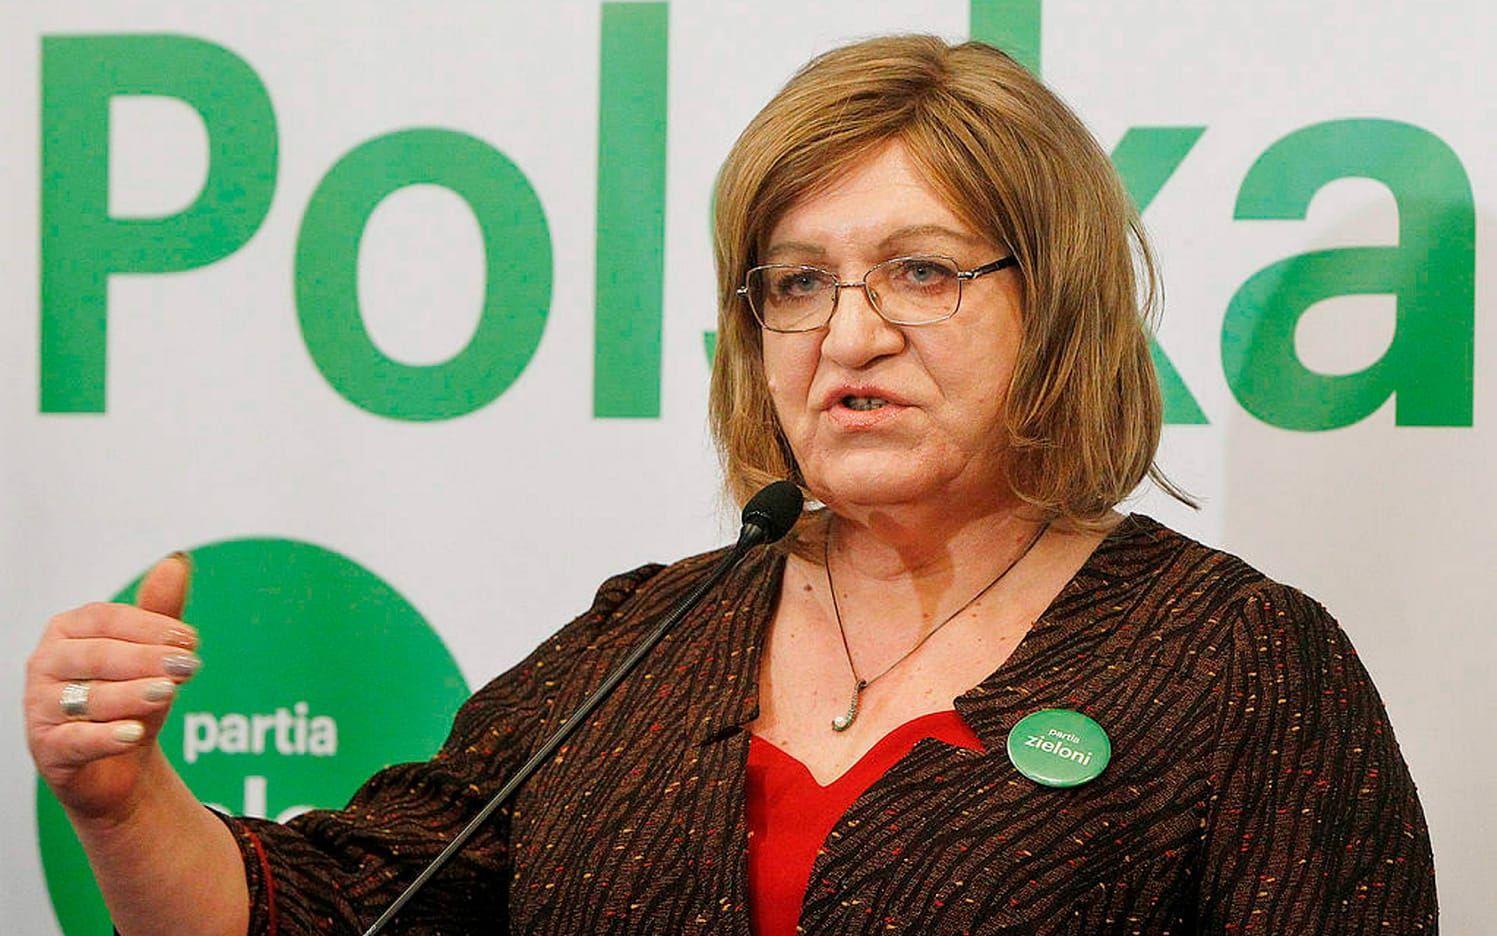 Anna Grodzka är en polsk politiker. Kanske inte så känd i Sverige, men hon var den första transkvinnan i ett europeiskt parlament och kämpar både för hbtq- och jämställdhetsfrågor. Bild: TT